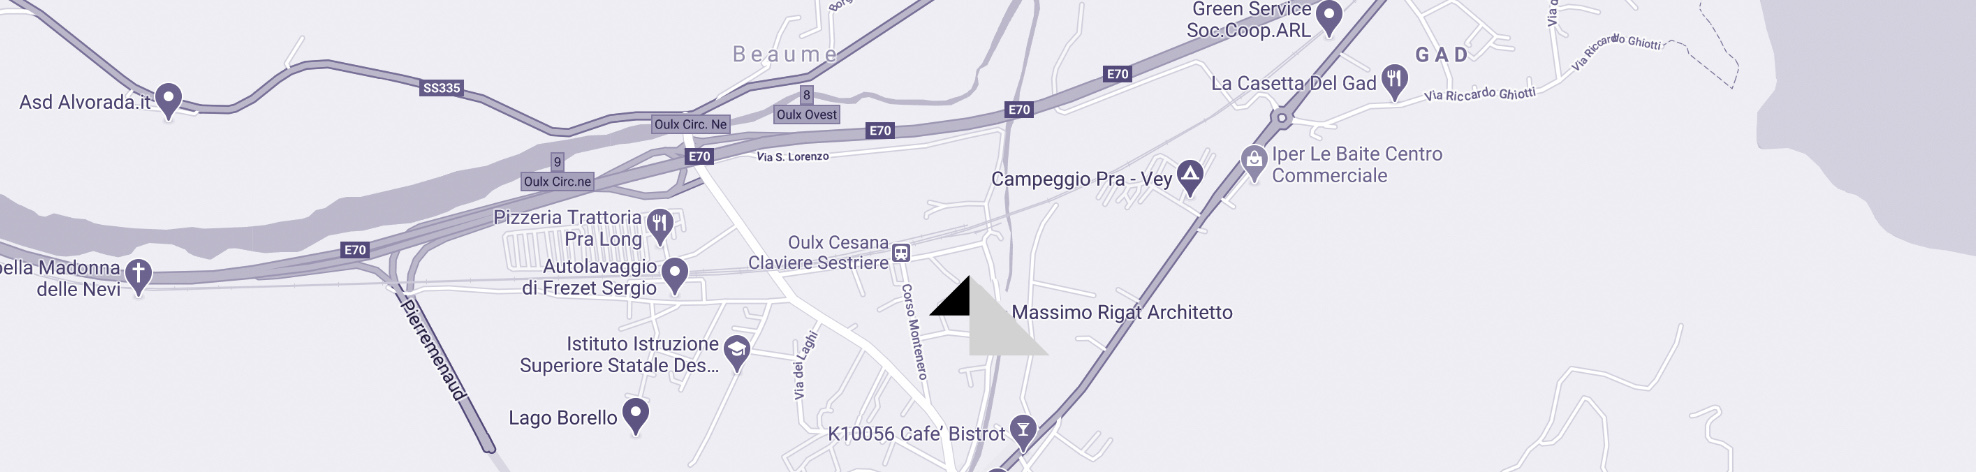 Massimo Rigat Architetto Mappa